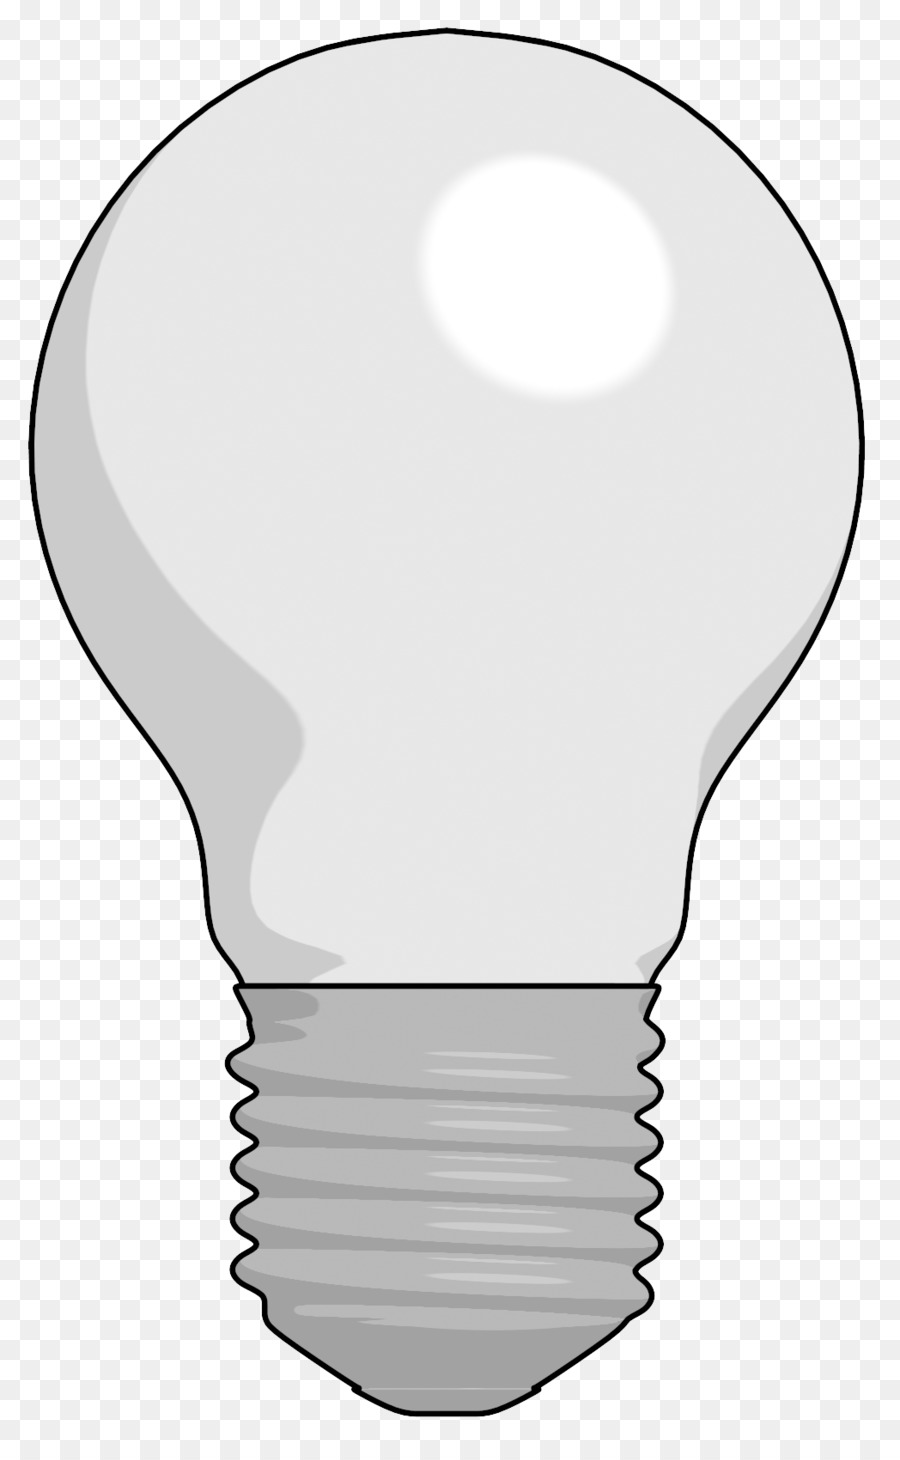 Lighting - lightbulb png download - 1048*1680 - Free Transparent  Light png Download.